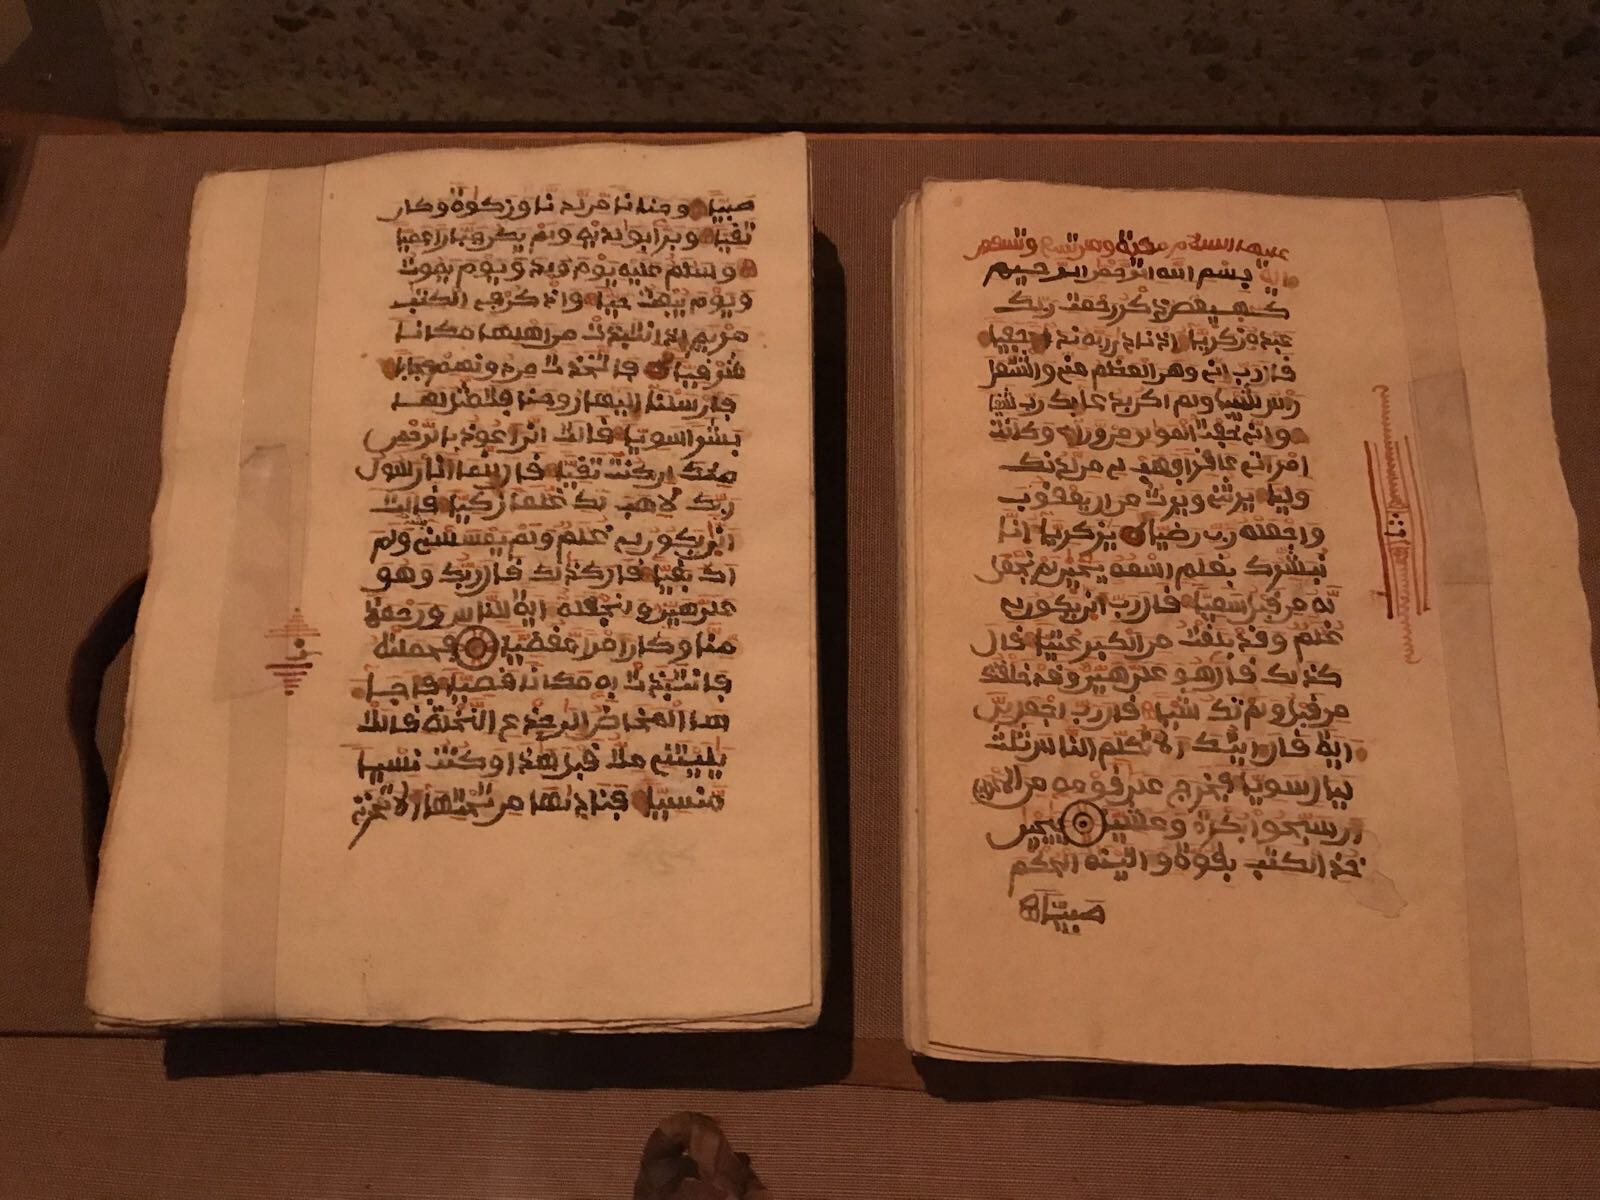 بيت (القرآن الكريم) يعرض في قاعاته الرئيسية الخمس المخطوطات والكتب الاسلامية القديمة والنادرة